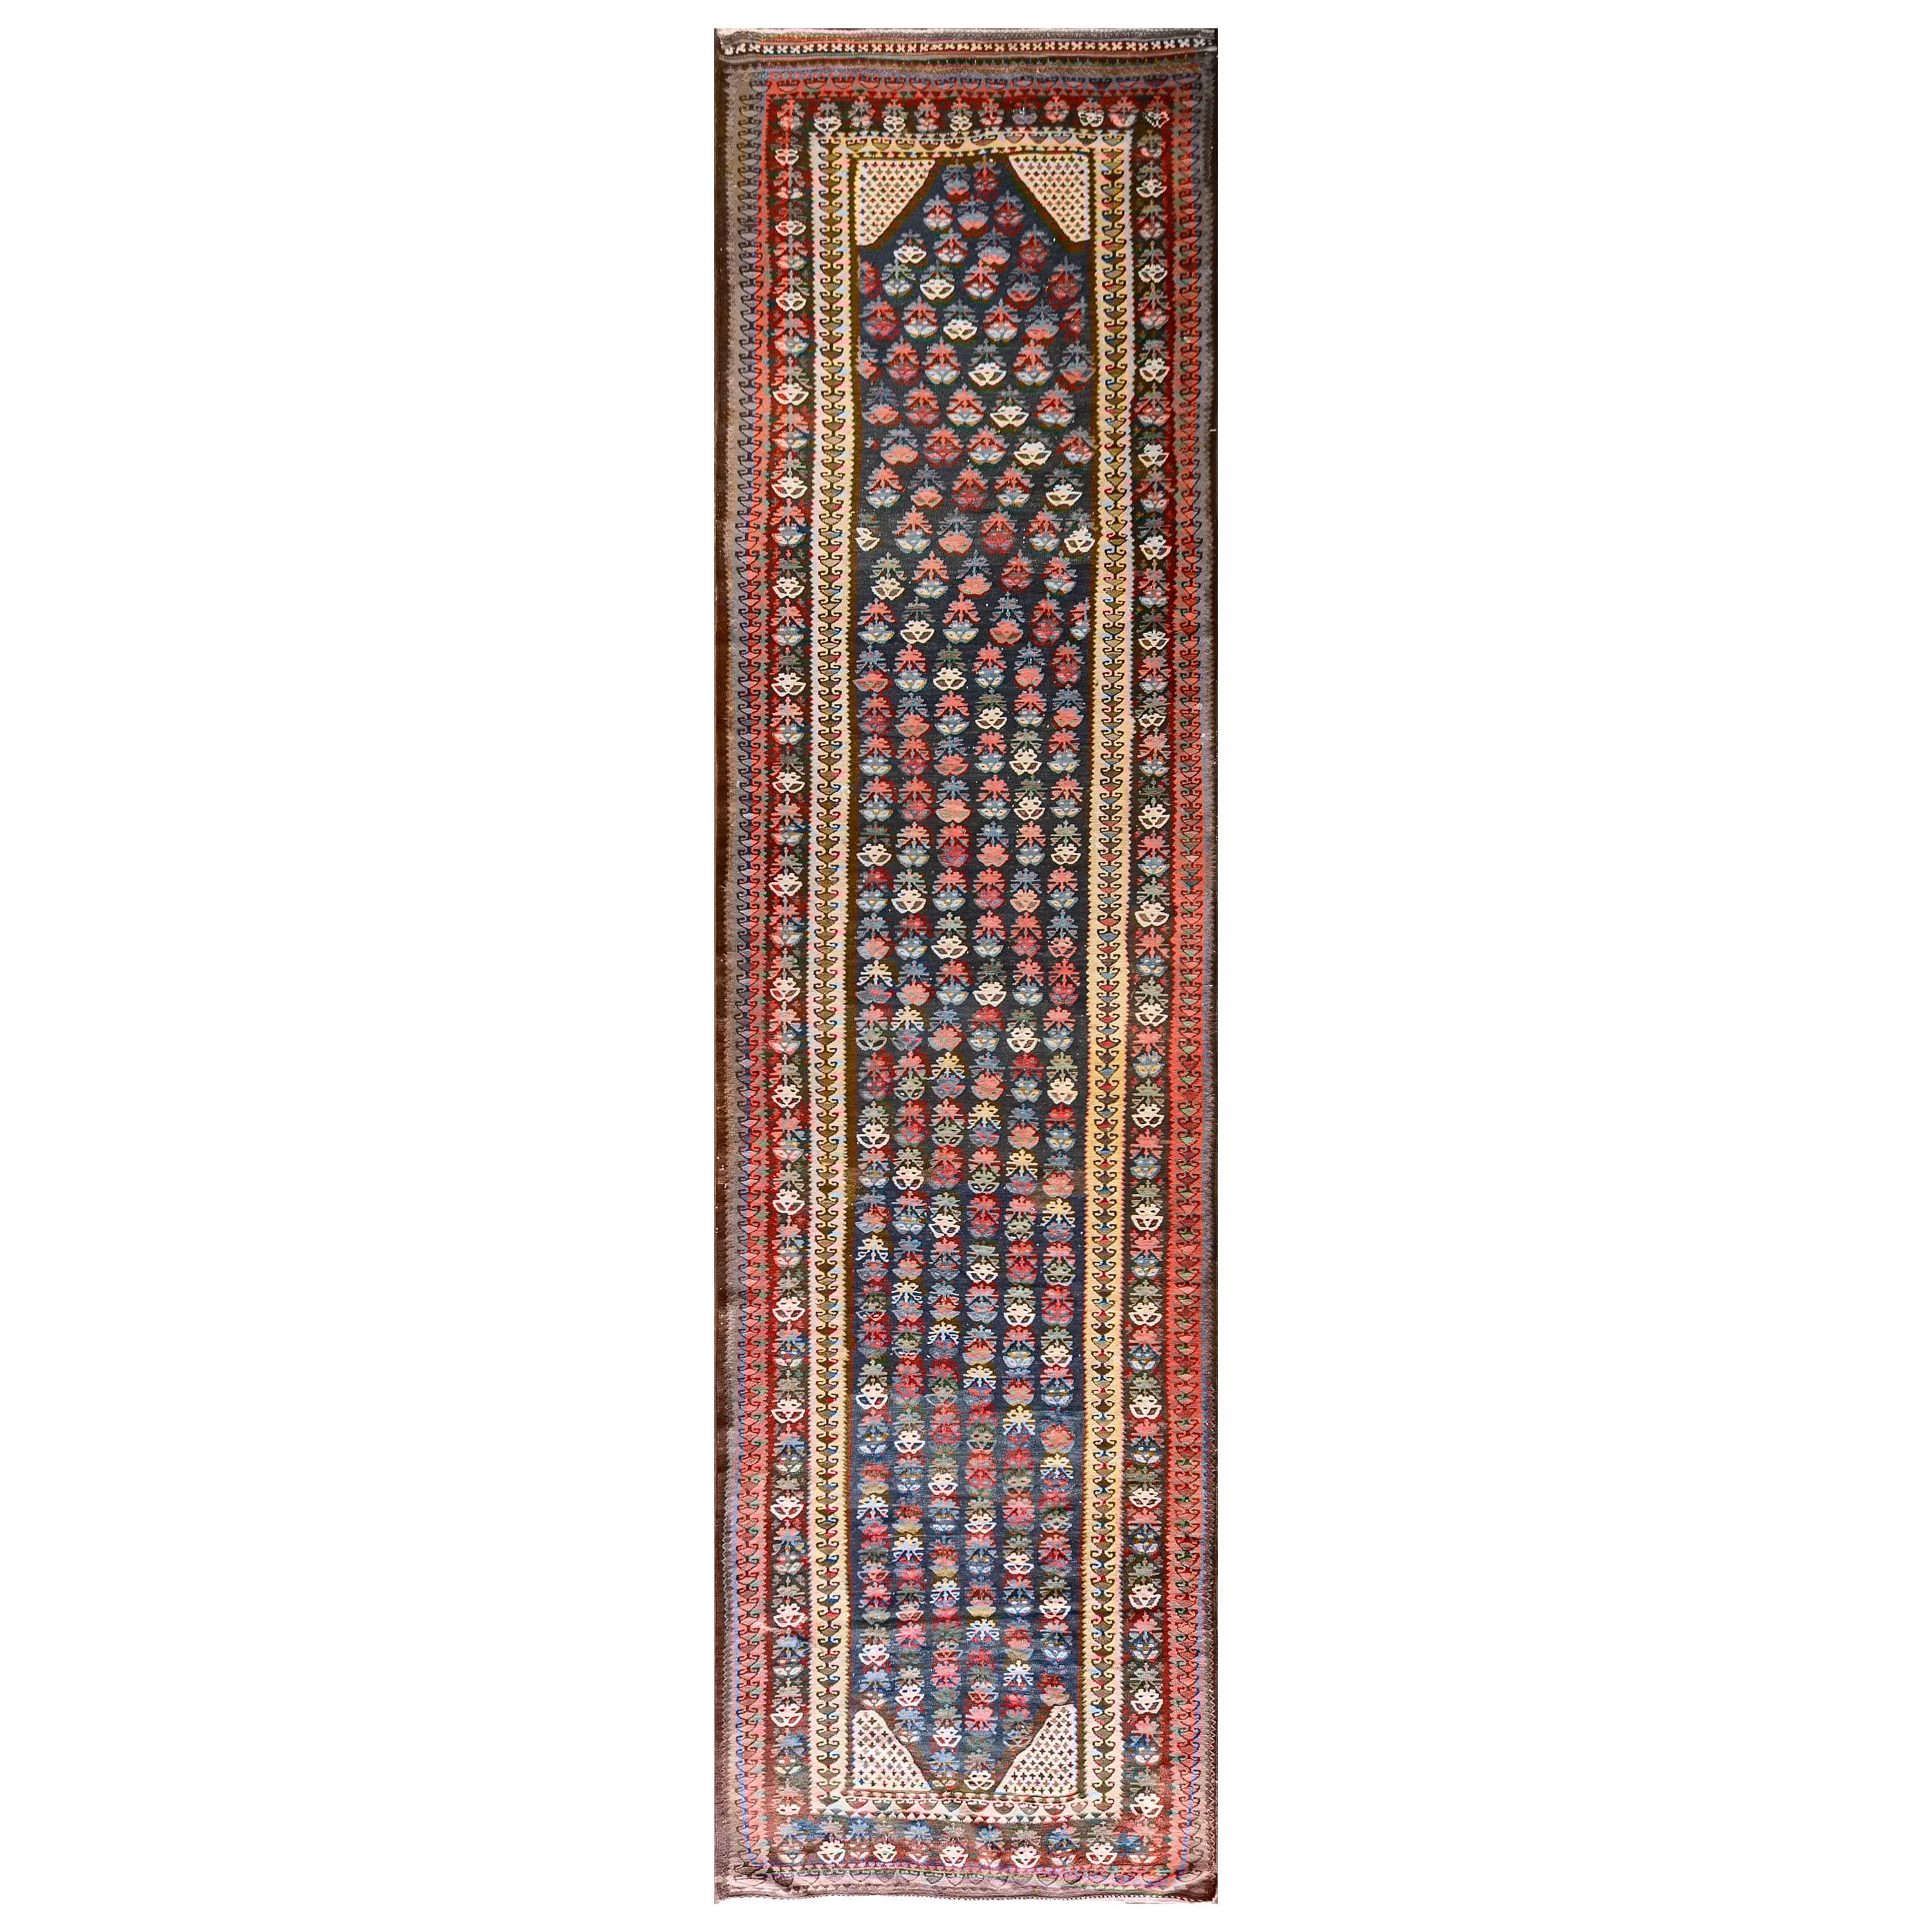 Antique Persian Soumak Kiim Runner, 4'2" x 15'7" For Sale